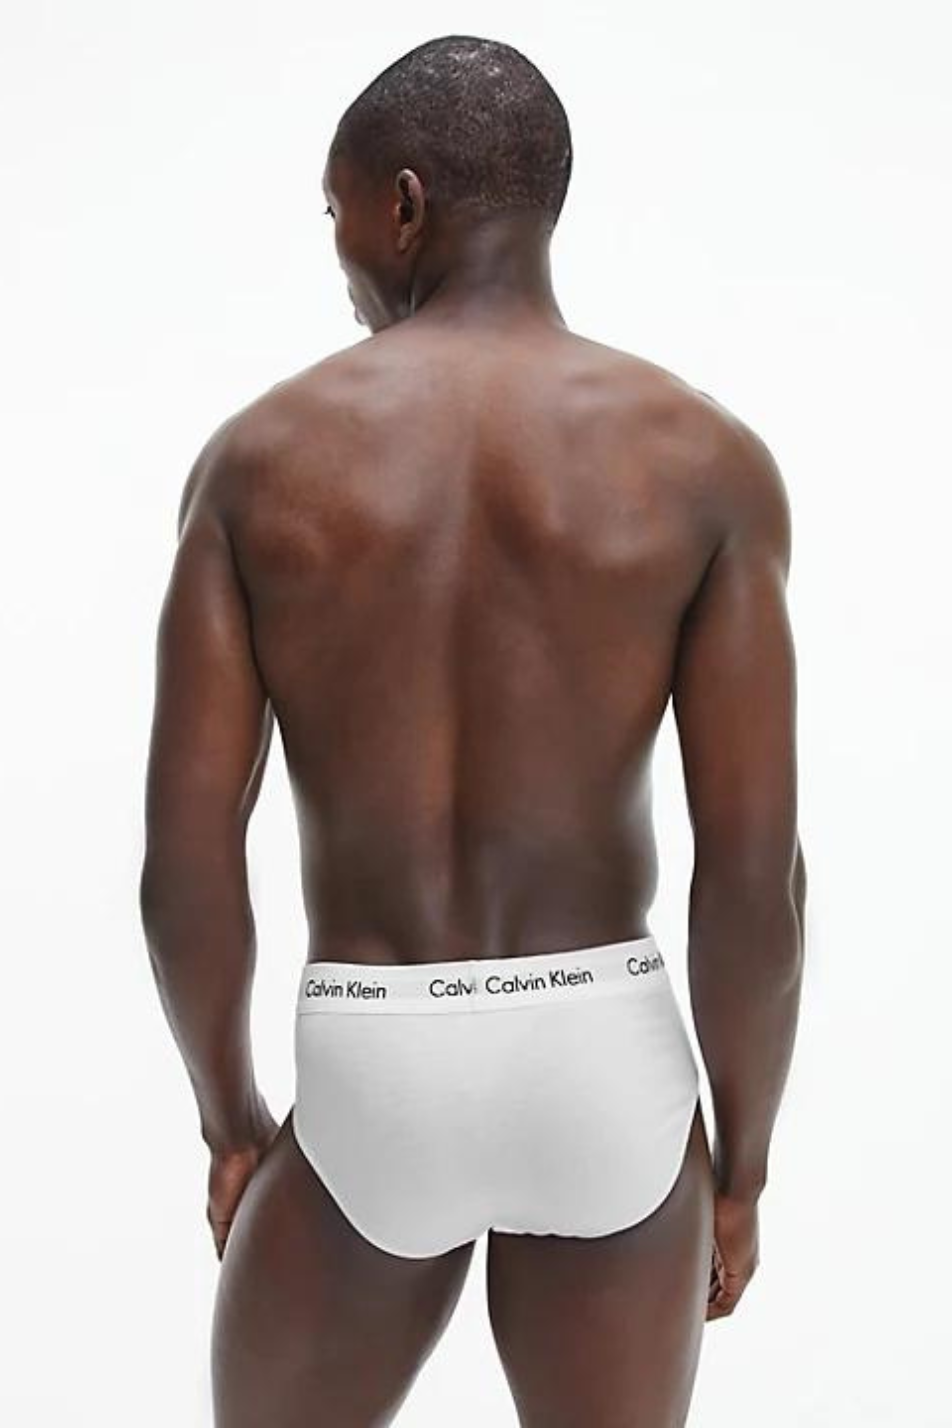 Calvin Klein 3 Pack Men's Cotton Stretch Hip Briefs